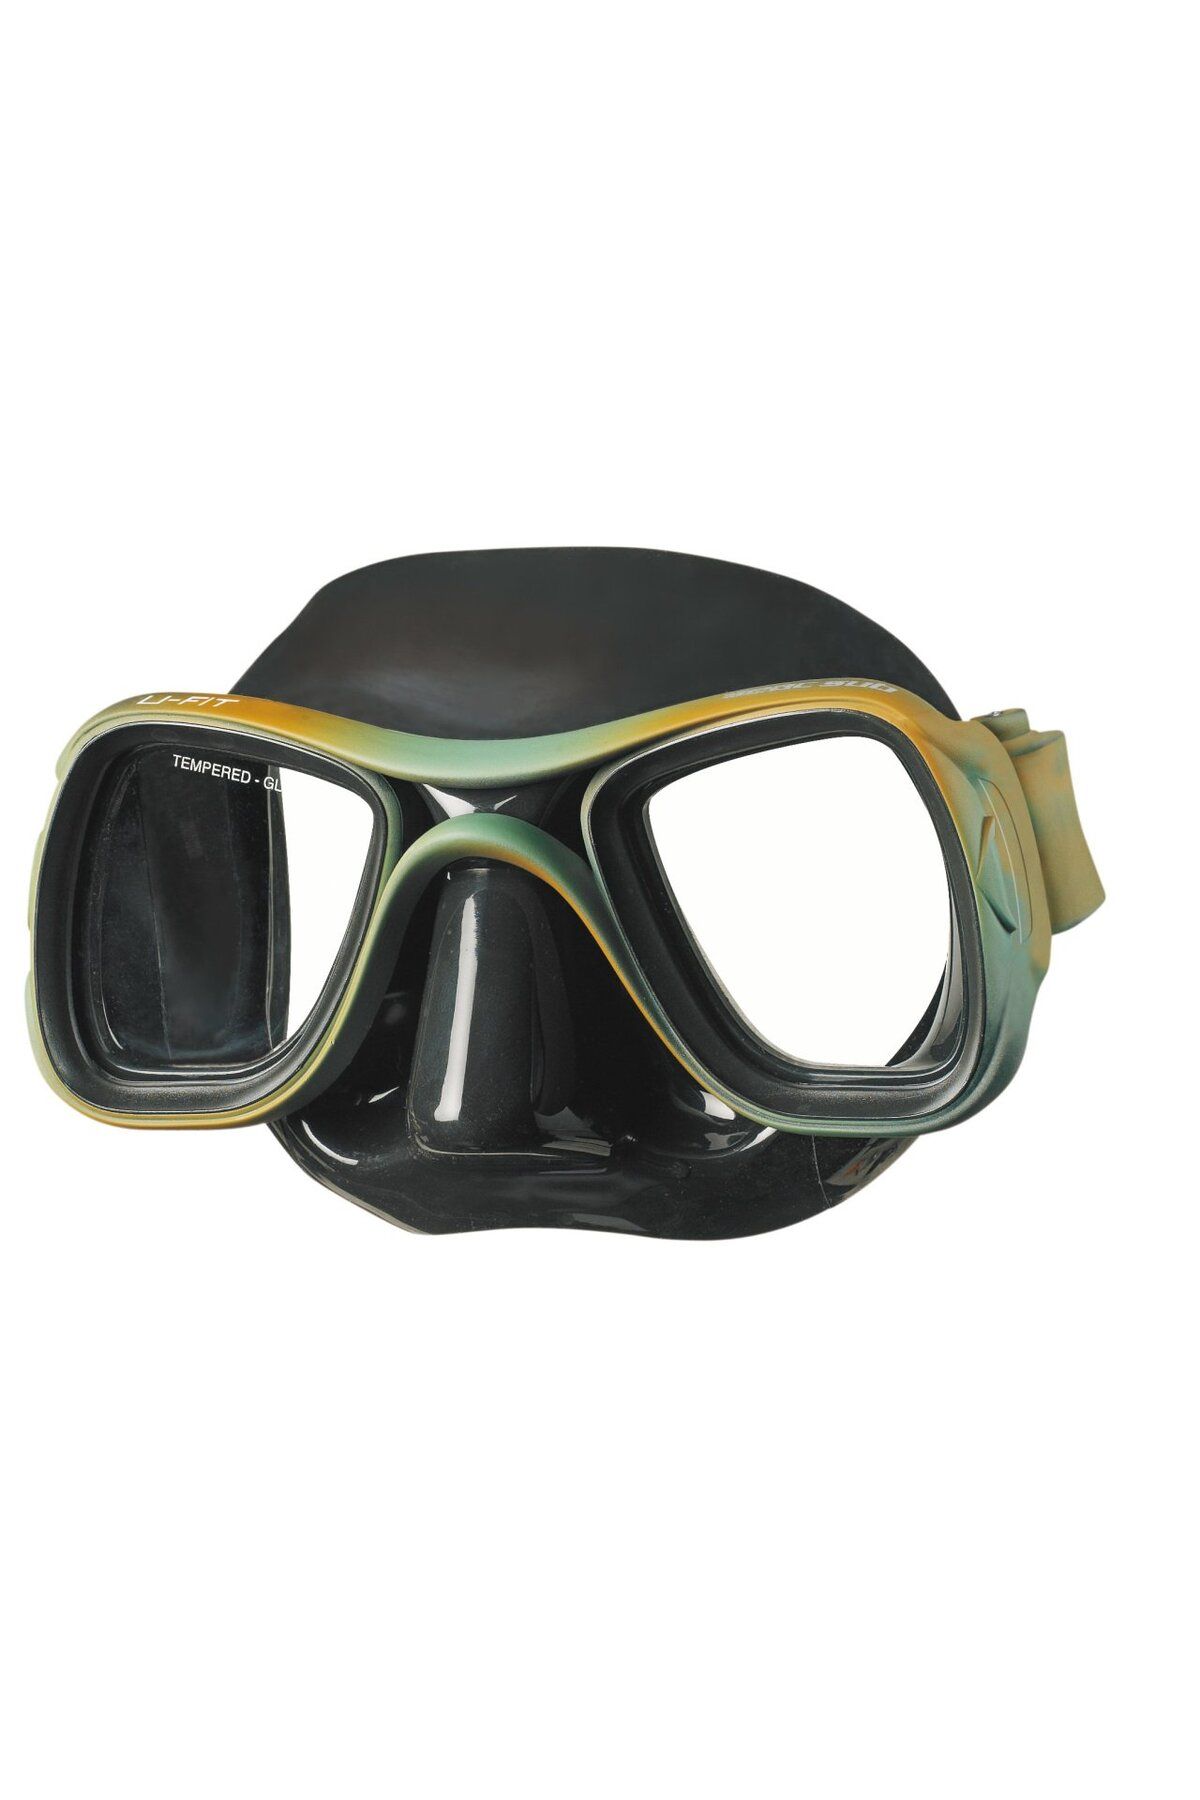 Seac Sub Maske U-fıt (SIYAH SLK./COMBAT CERCEVE)